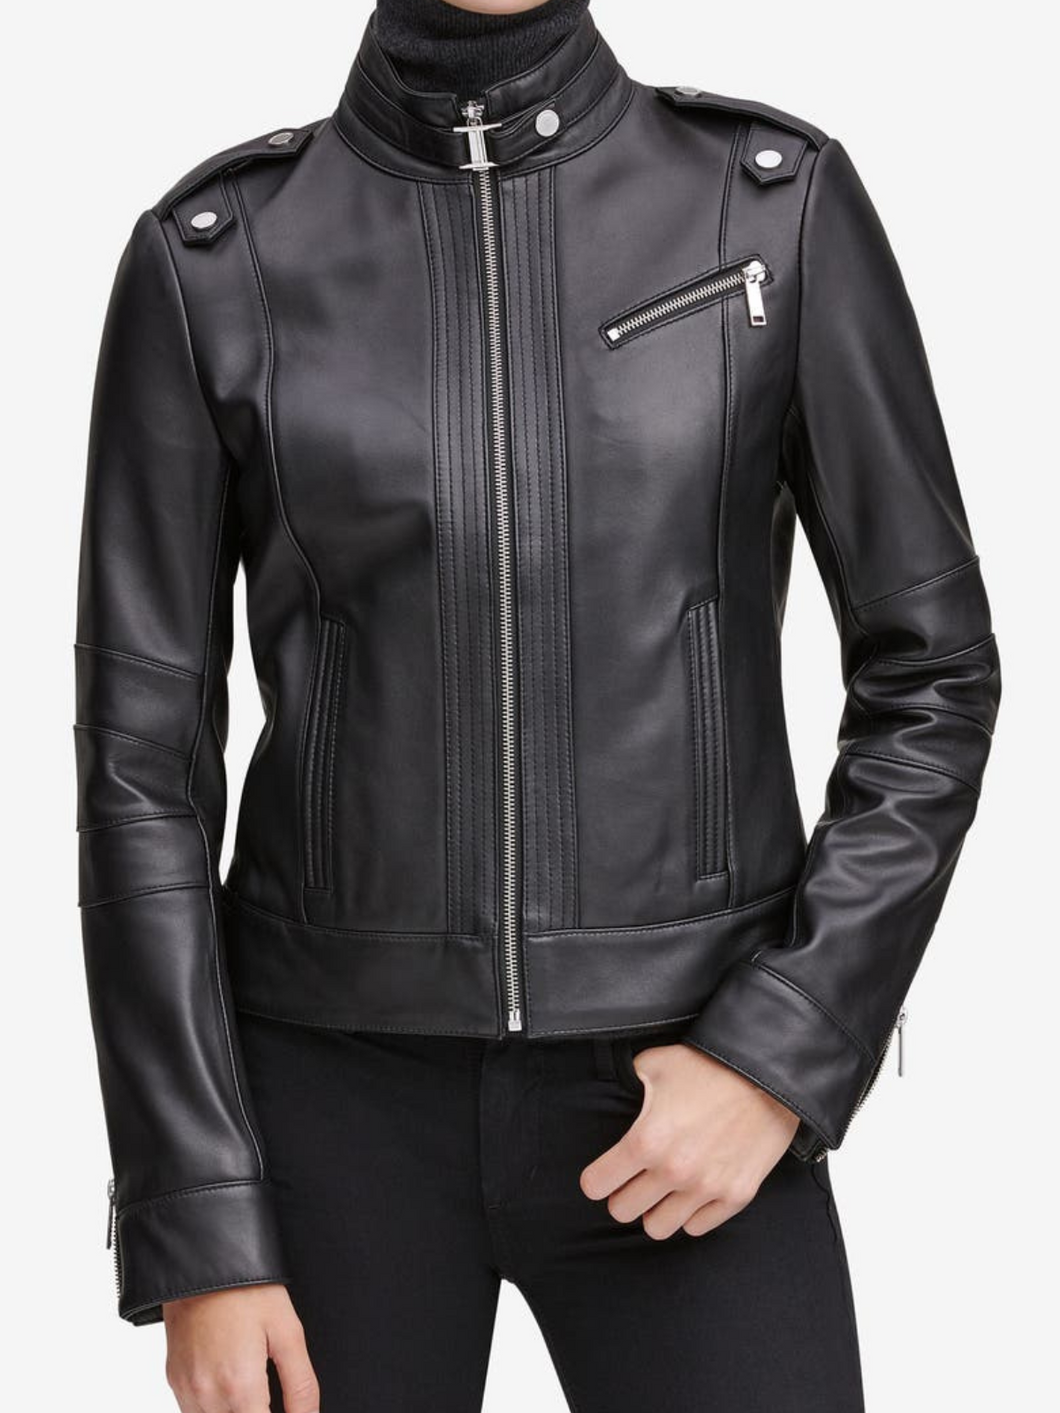 Black Strap Shoulder Leather Jacket For Women